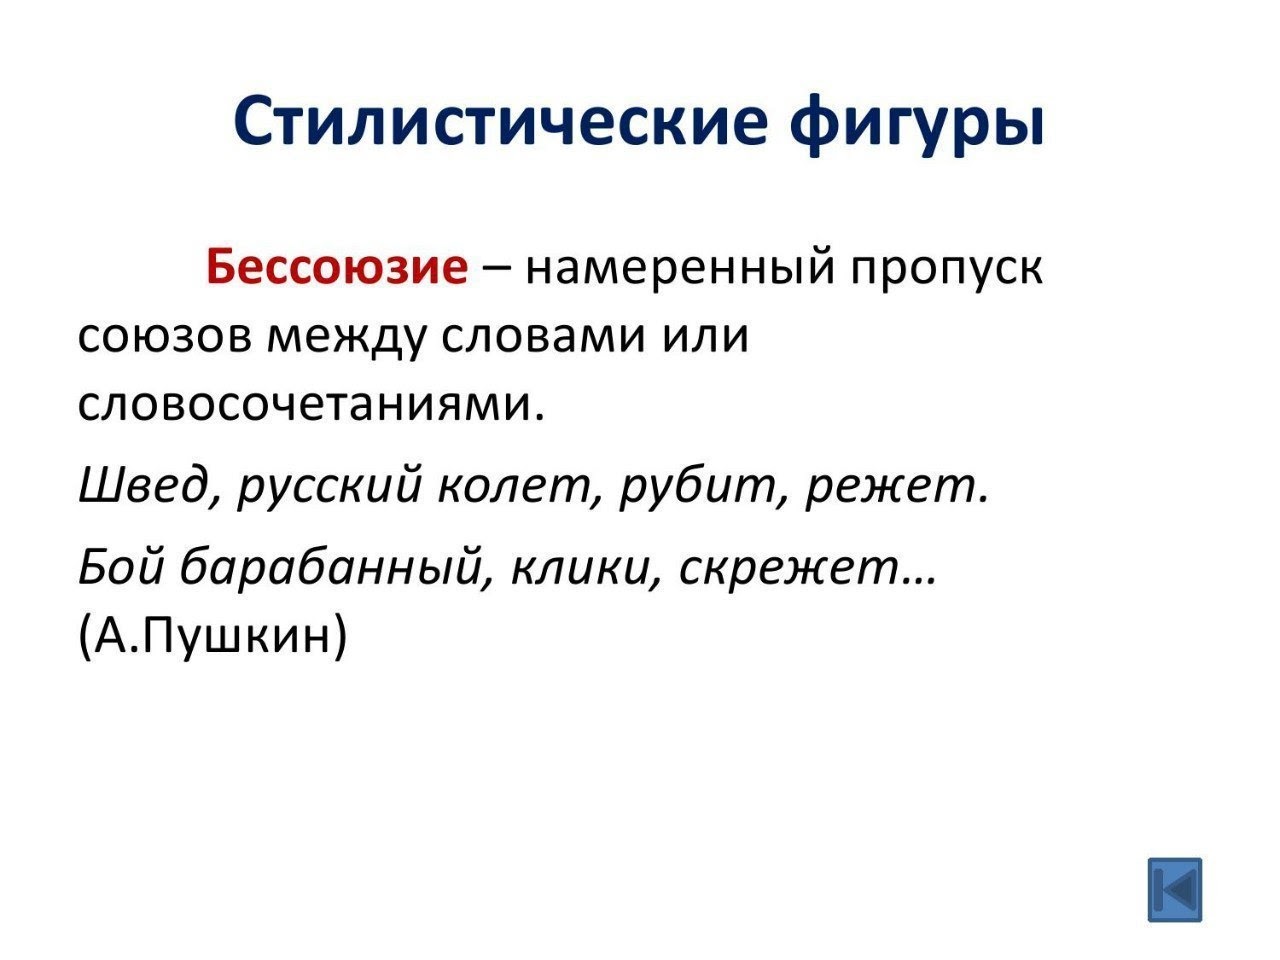 Стилистические фигуры по русскому языку бессоюзие